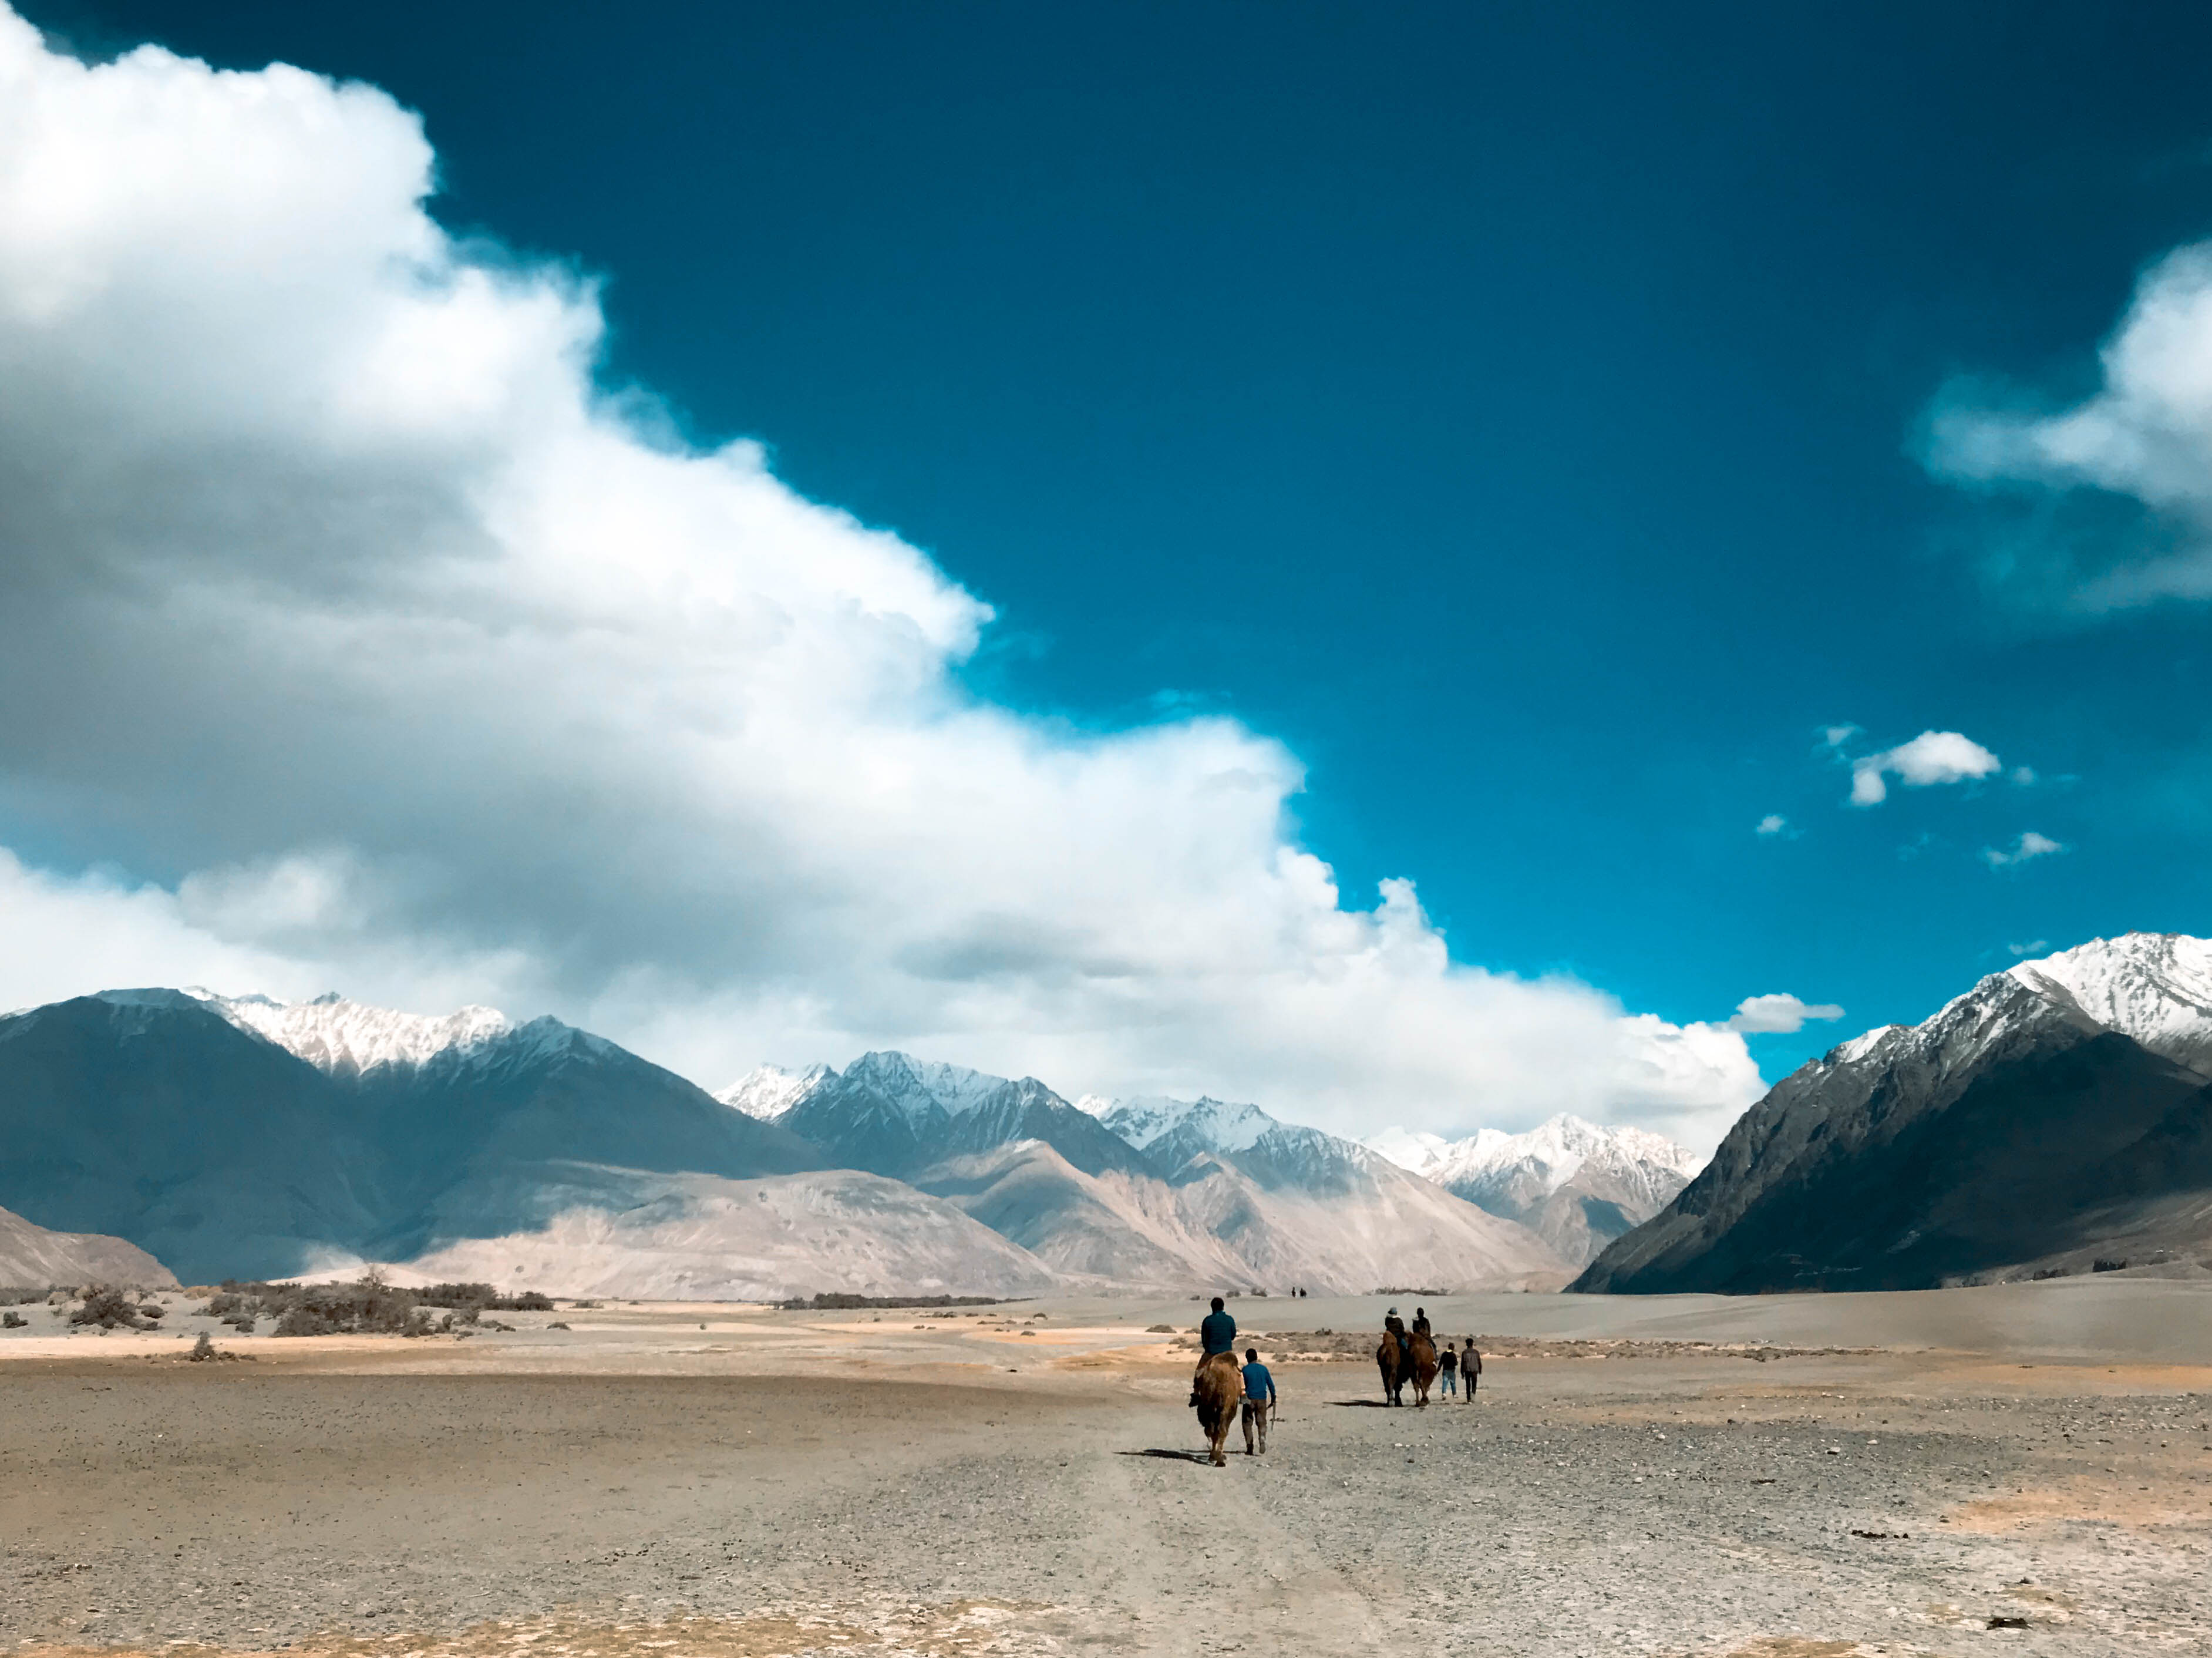 นูบร้าวัลเลย ทัวร์เลห์ ลาดักห์ เที่ยวเลห์ ลาดักห์ Leh Ladakh Tour leh ladakh